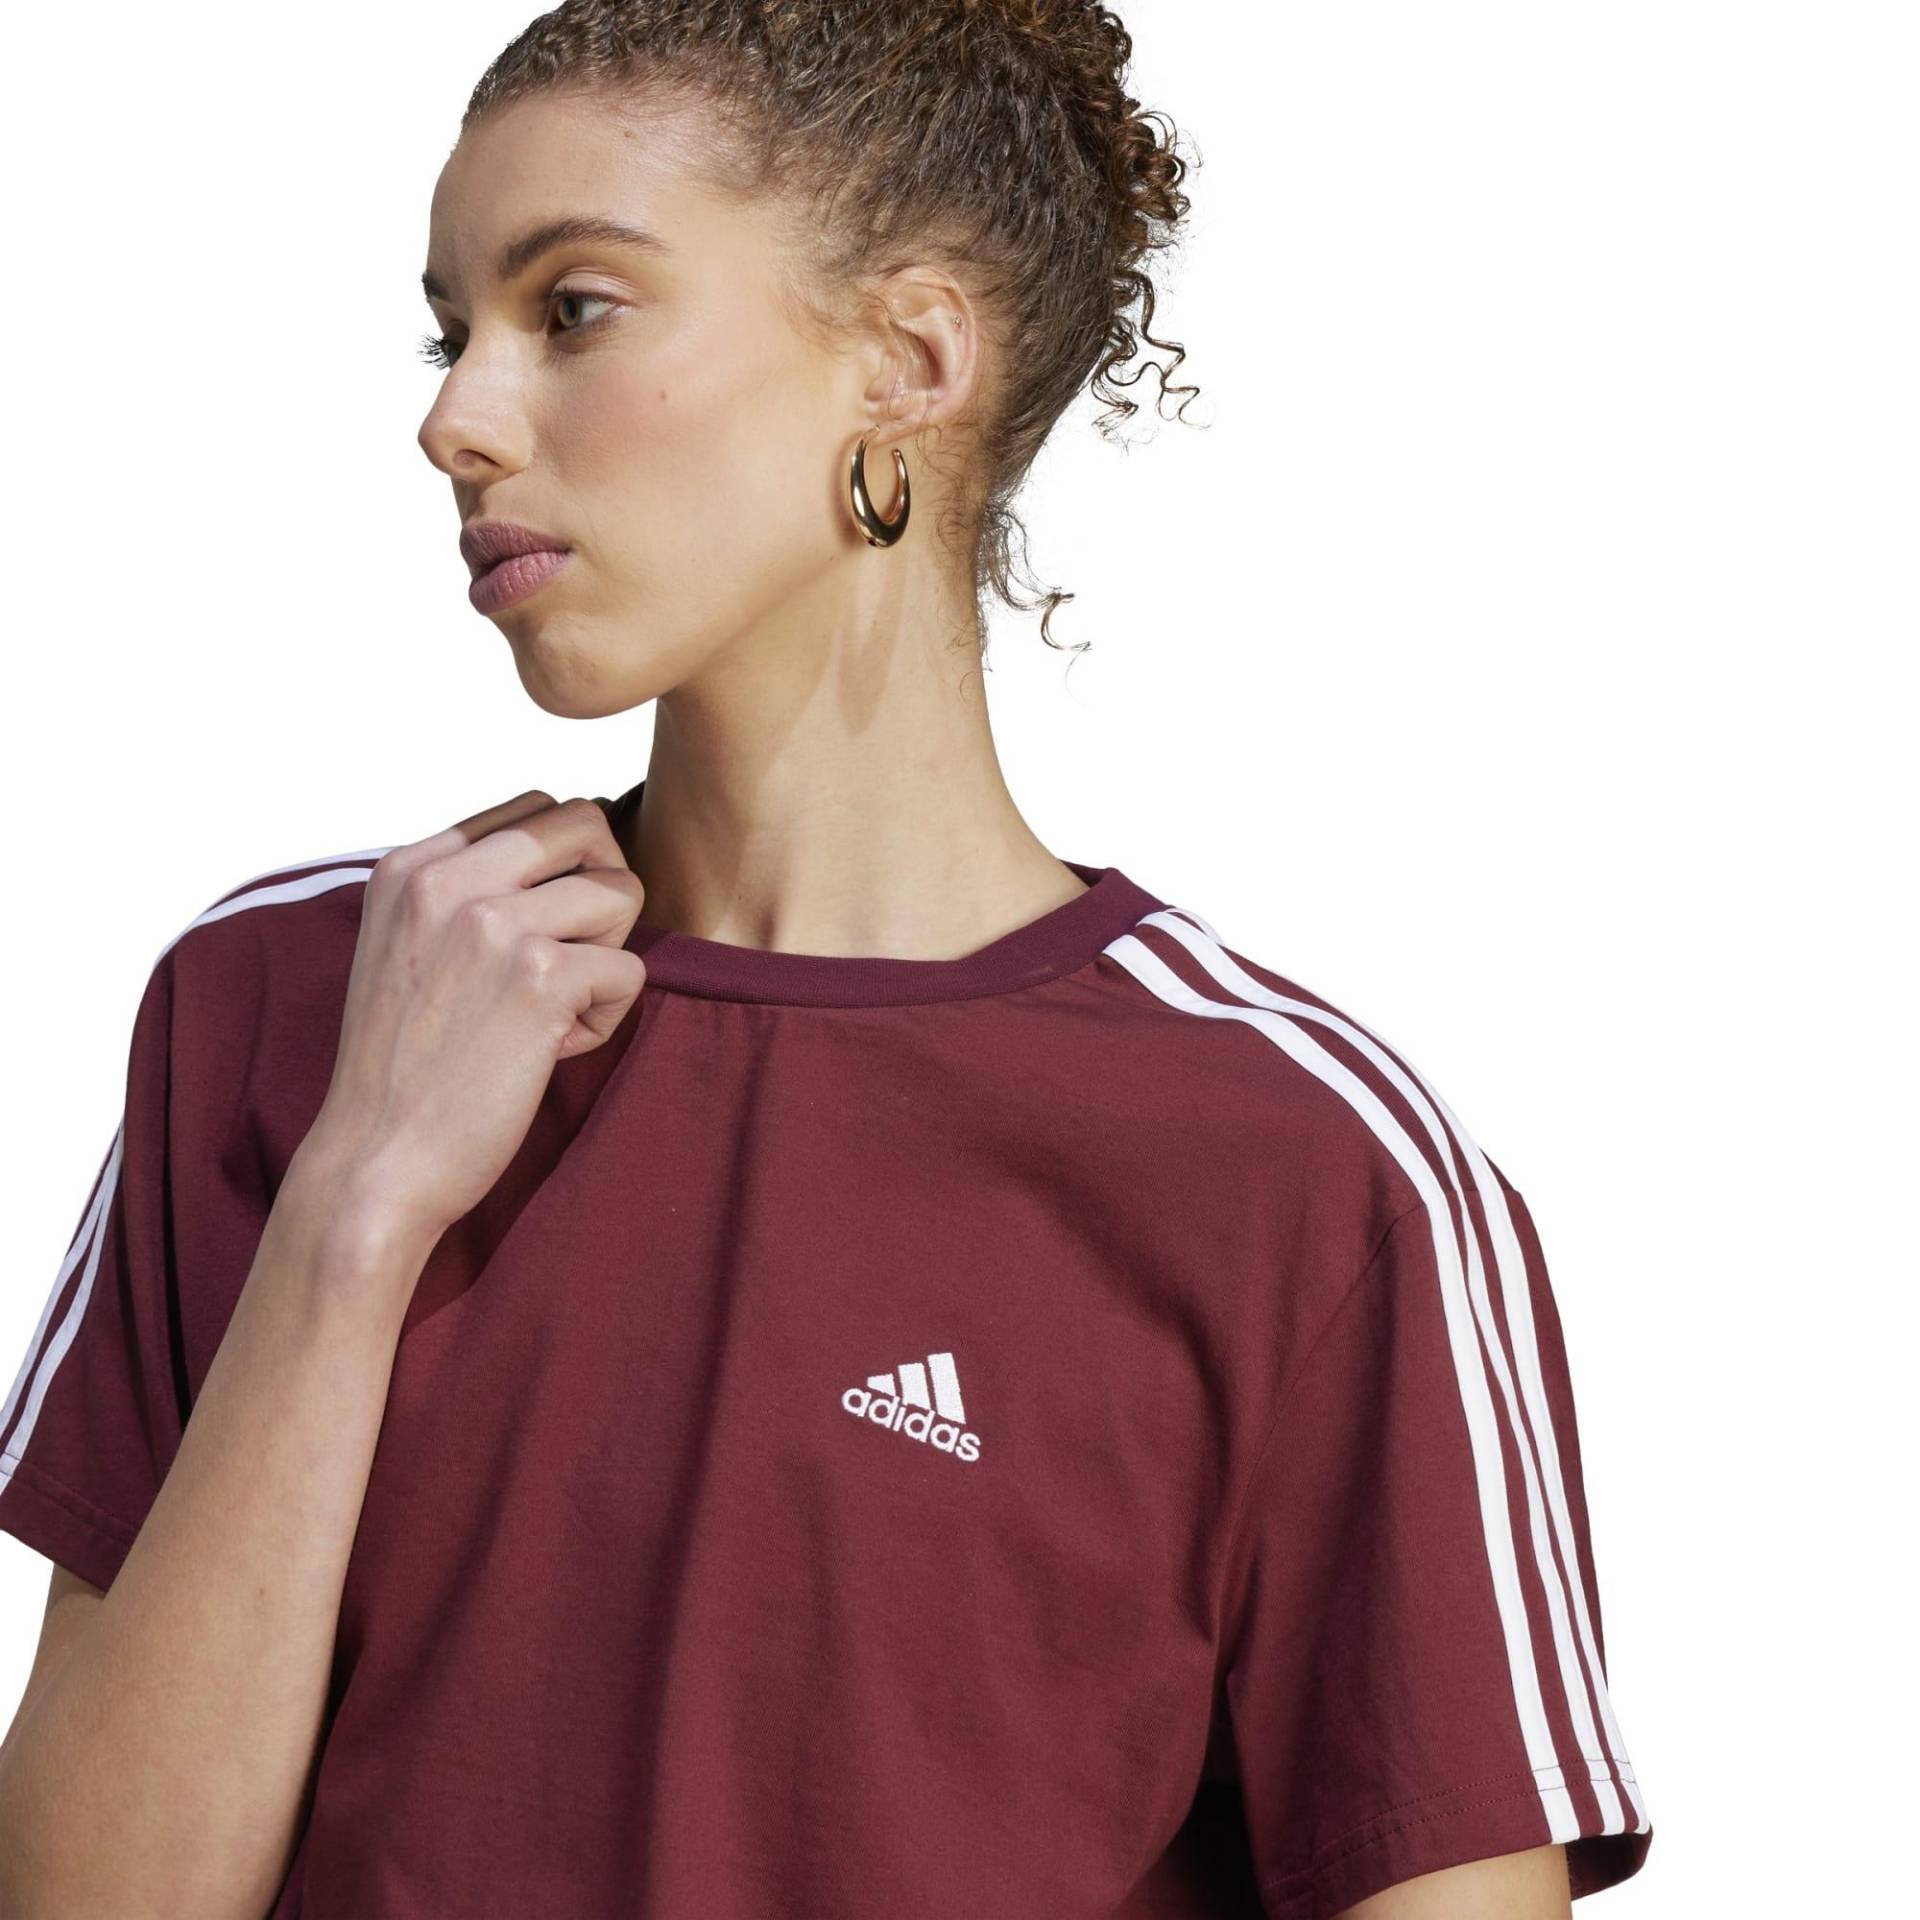 Adidas T-Shirt Damen - rot von Adidas